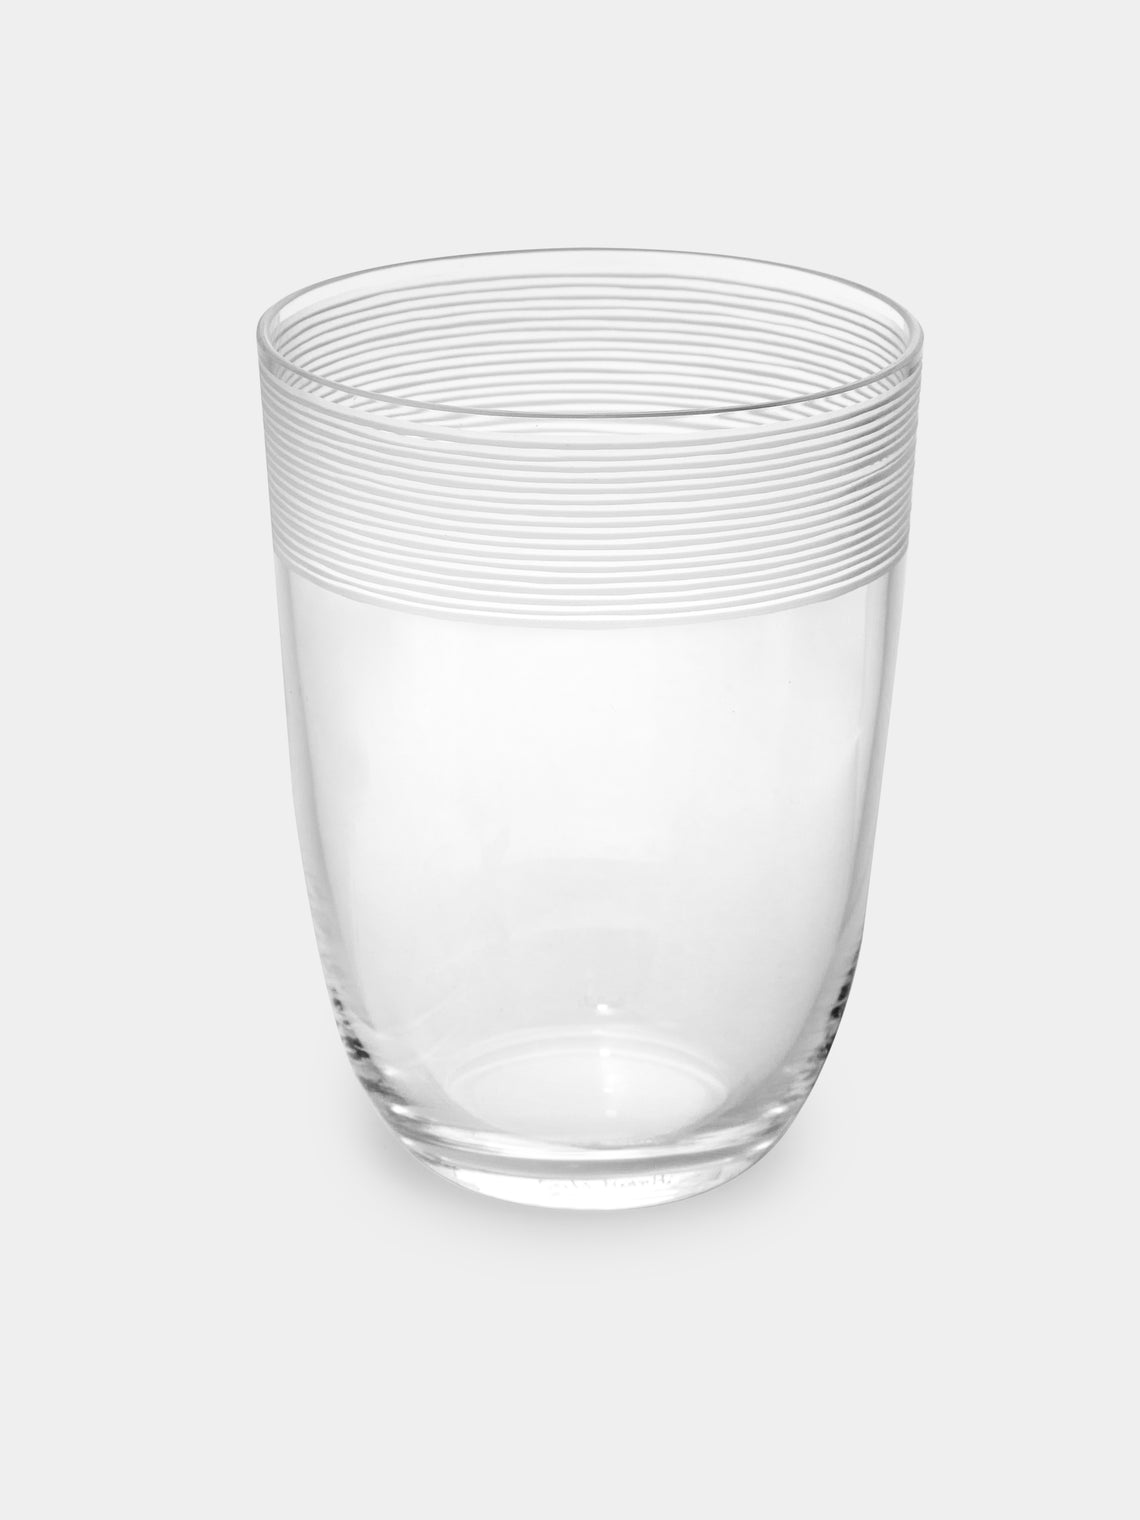 Carlo Moretti - Fili Molati Hand-Blown Murano Water Glass - Clear - ABASK - 